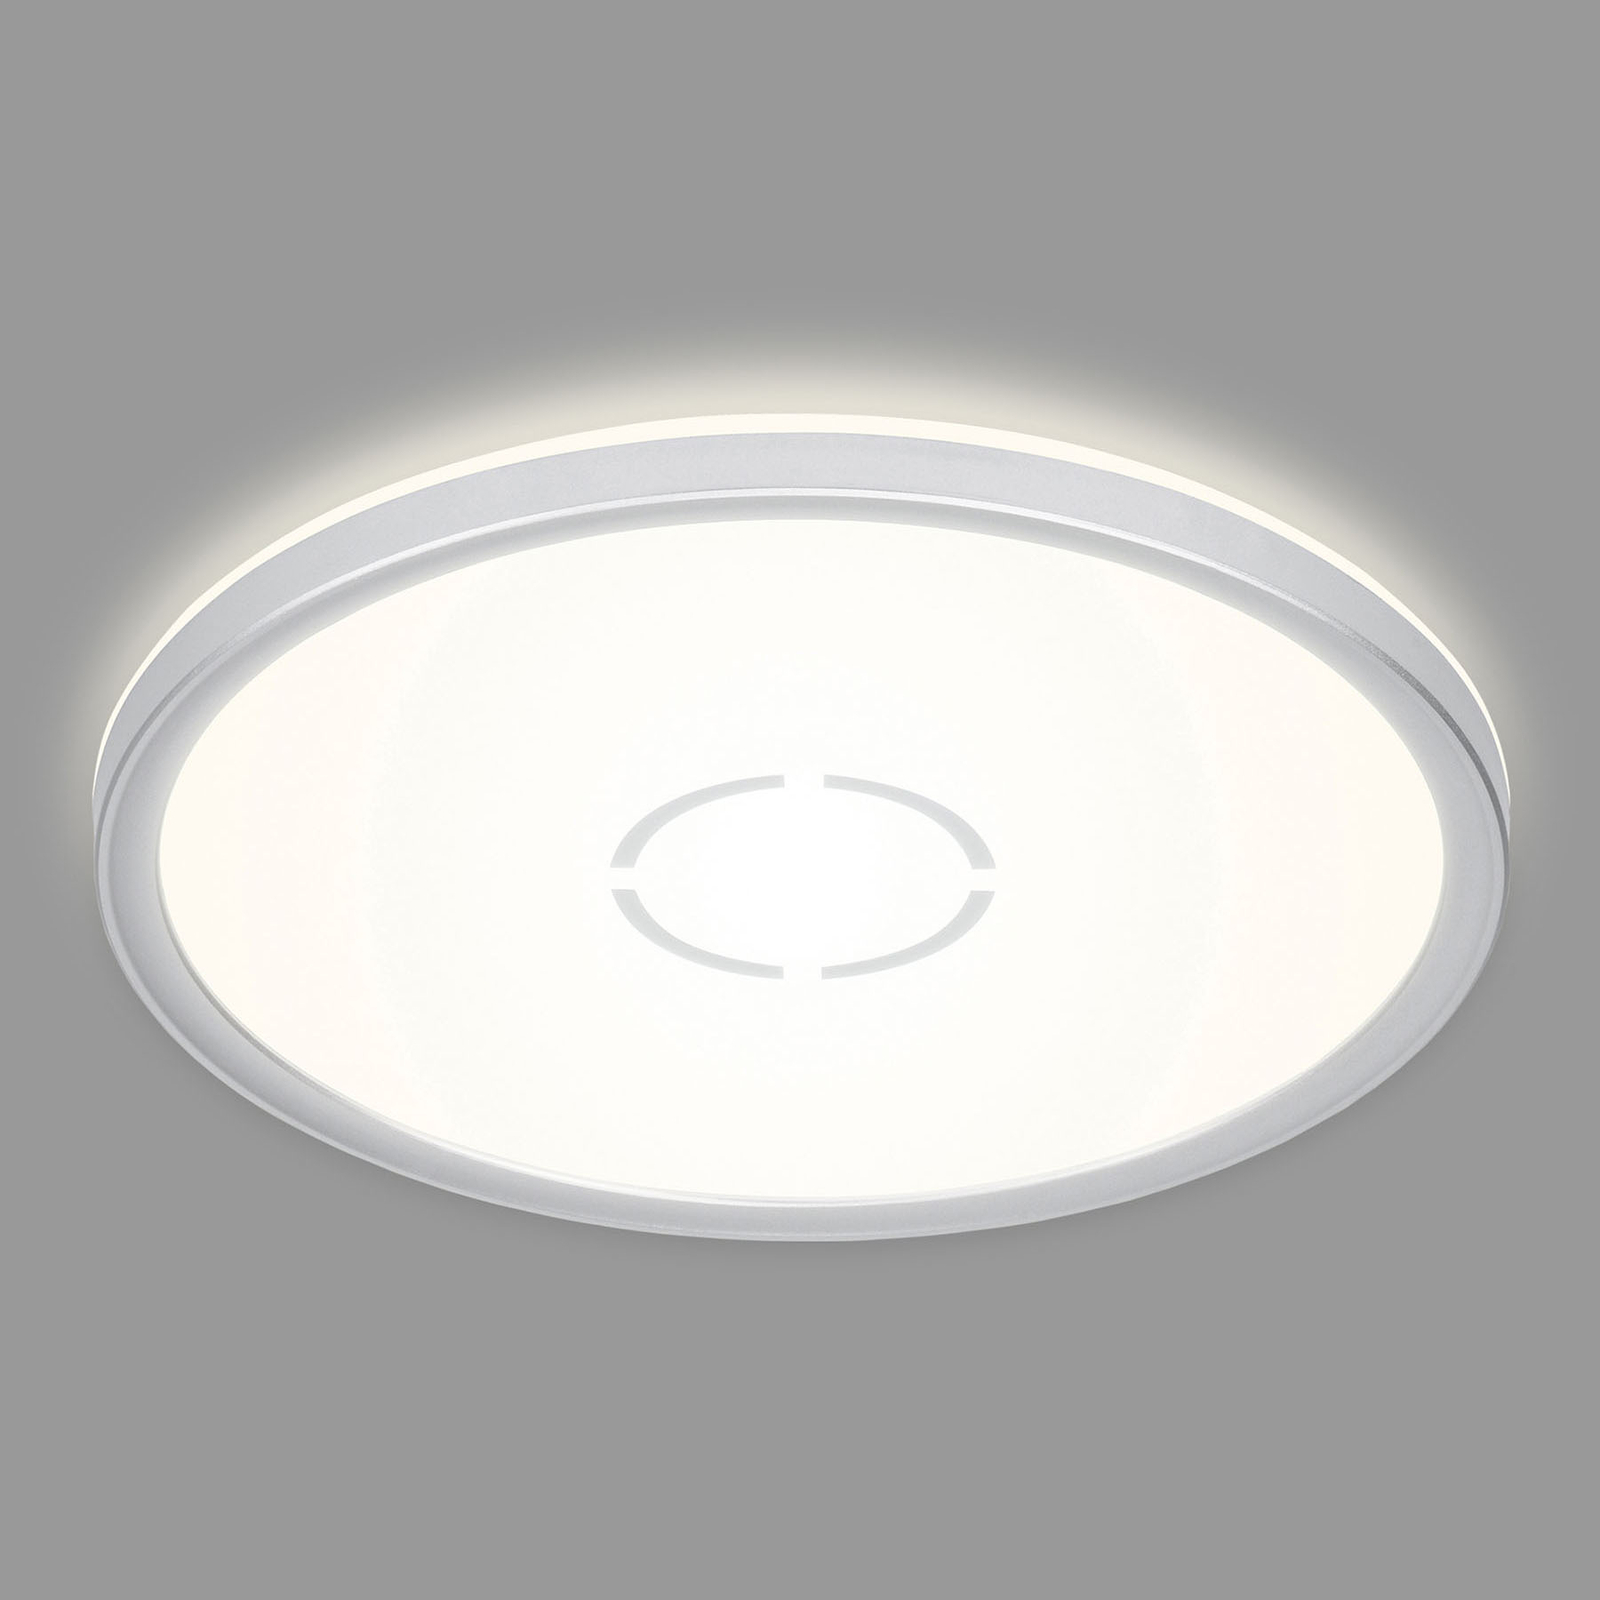 LED-taklampa Free, Ø 29 cm, silver